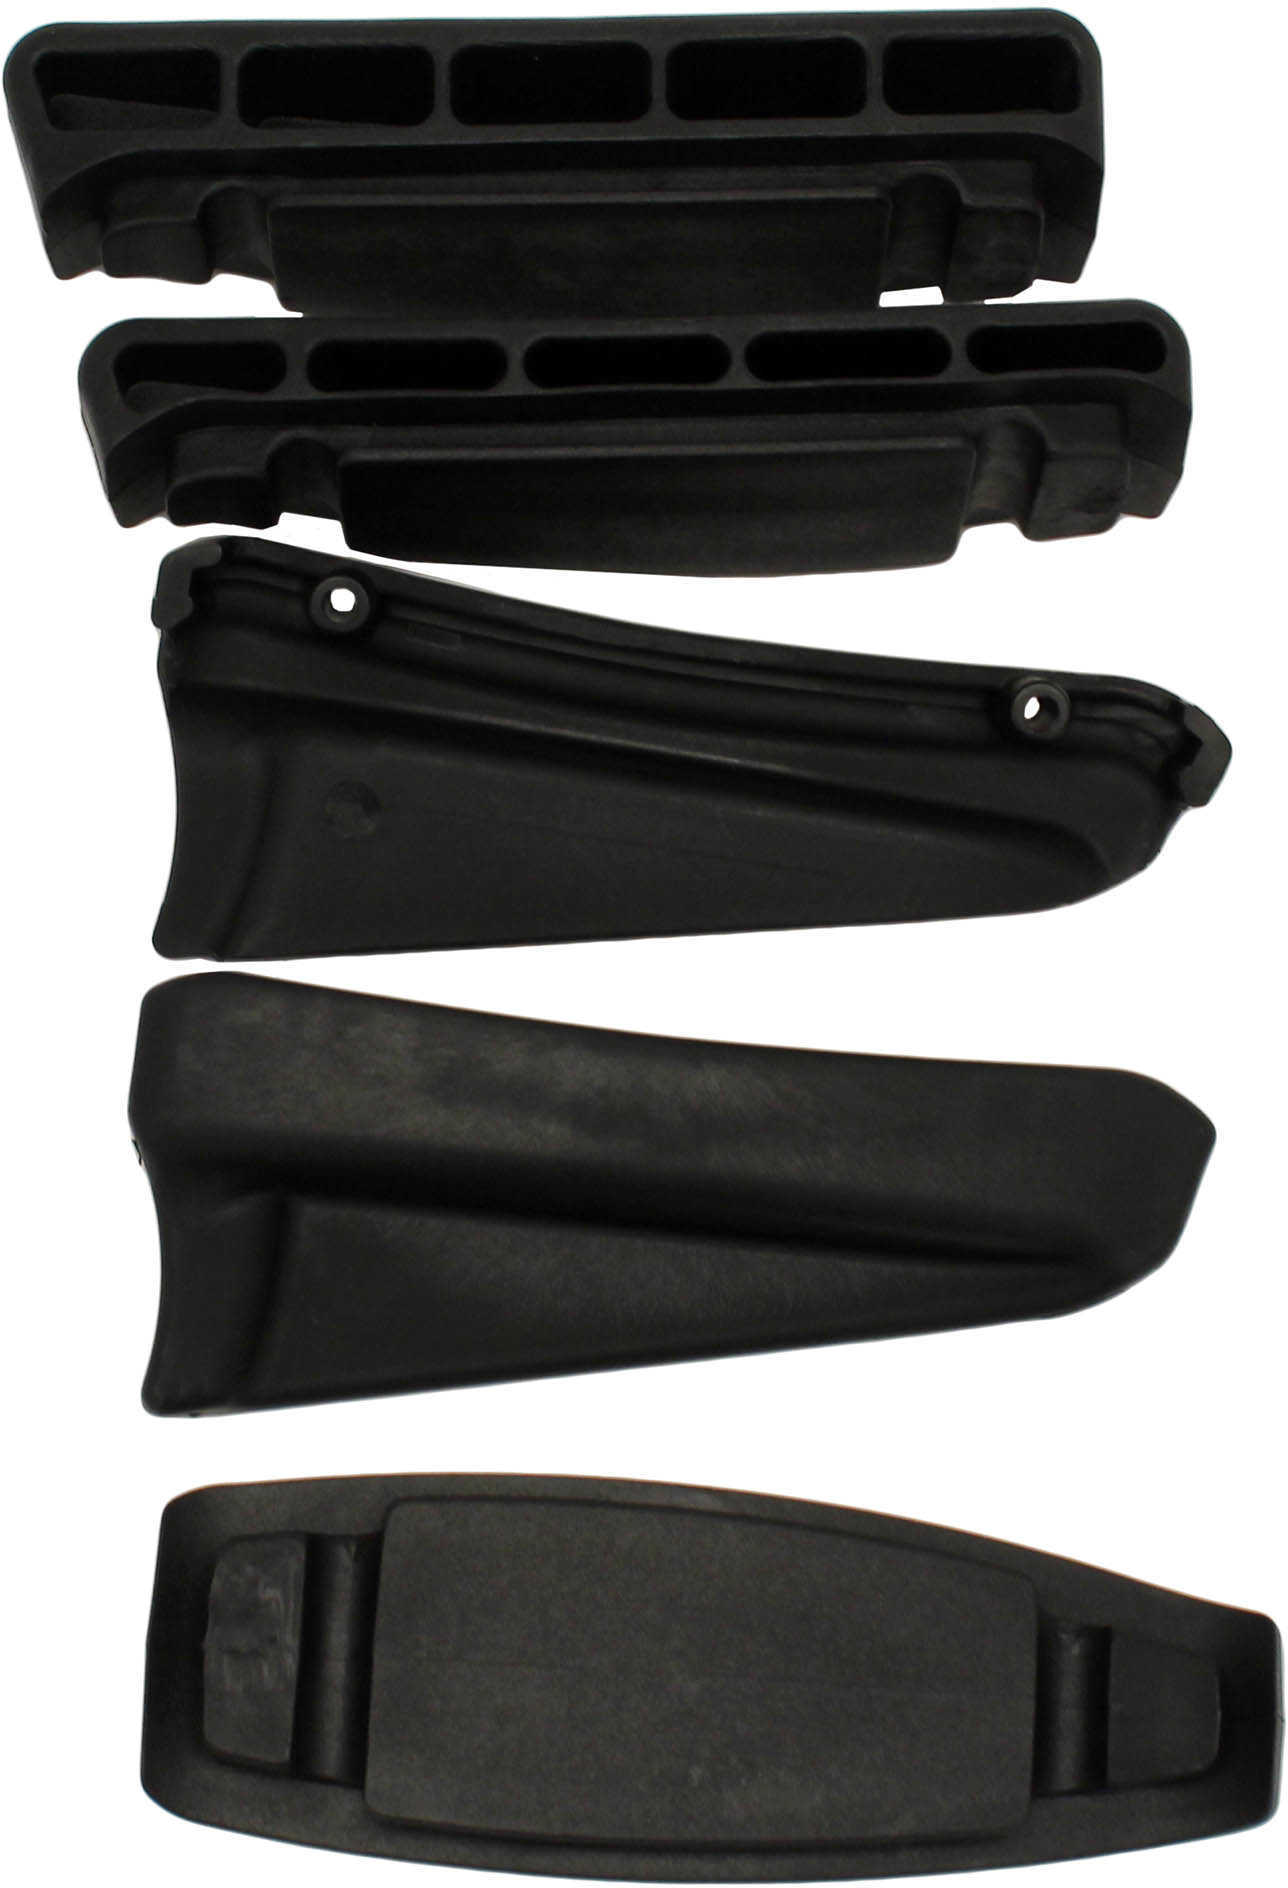 Excalibur X-TENDER - Black (For 2008 or newer Models) Md: 1981